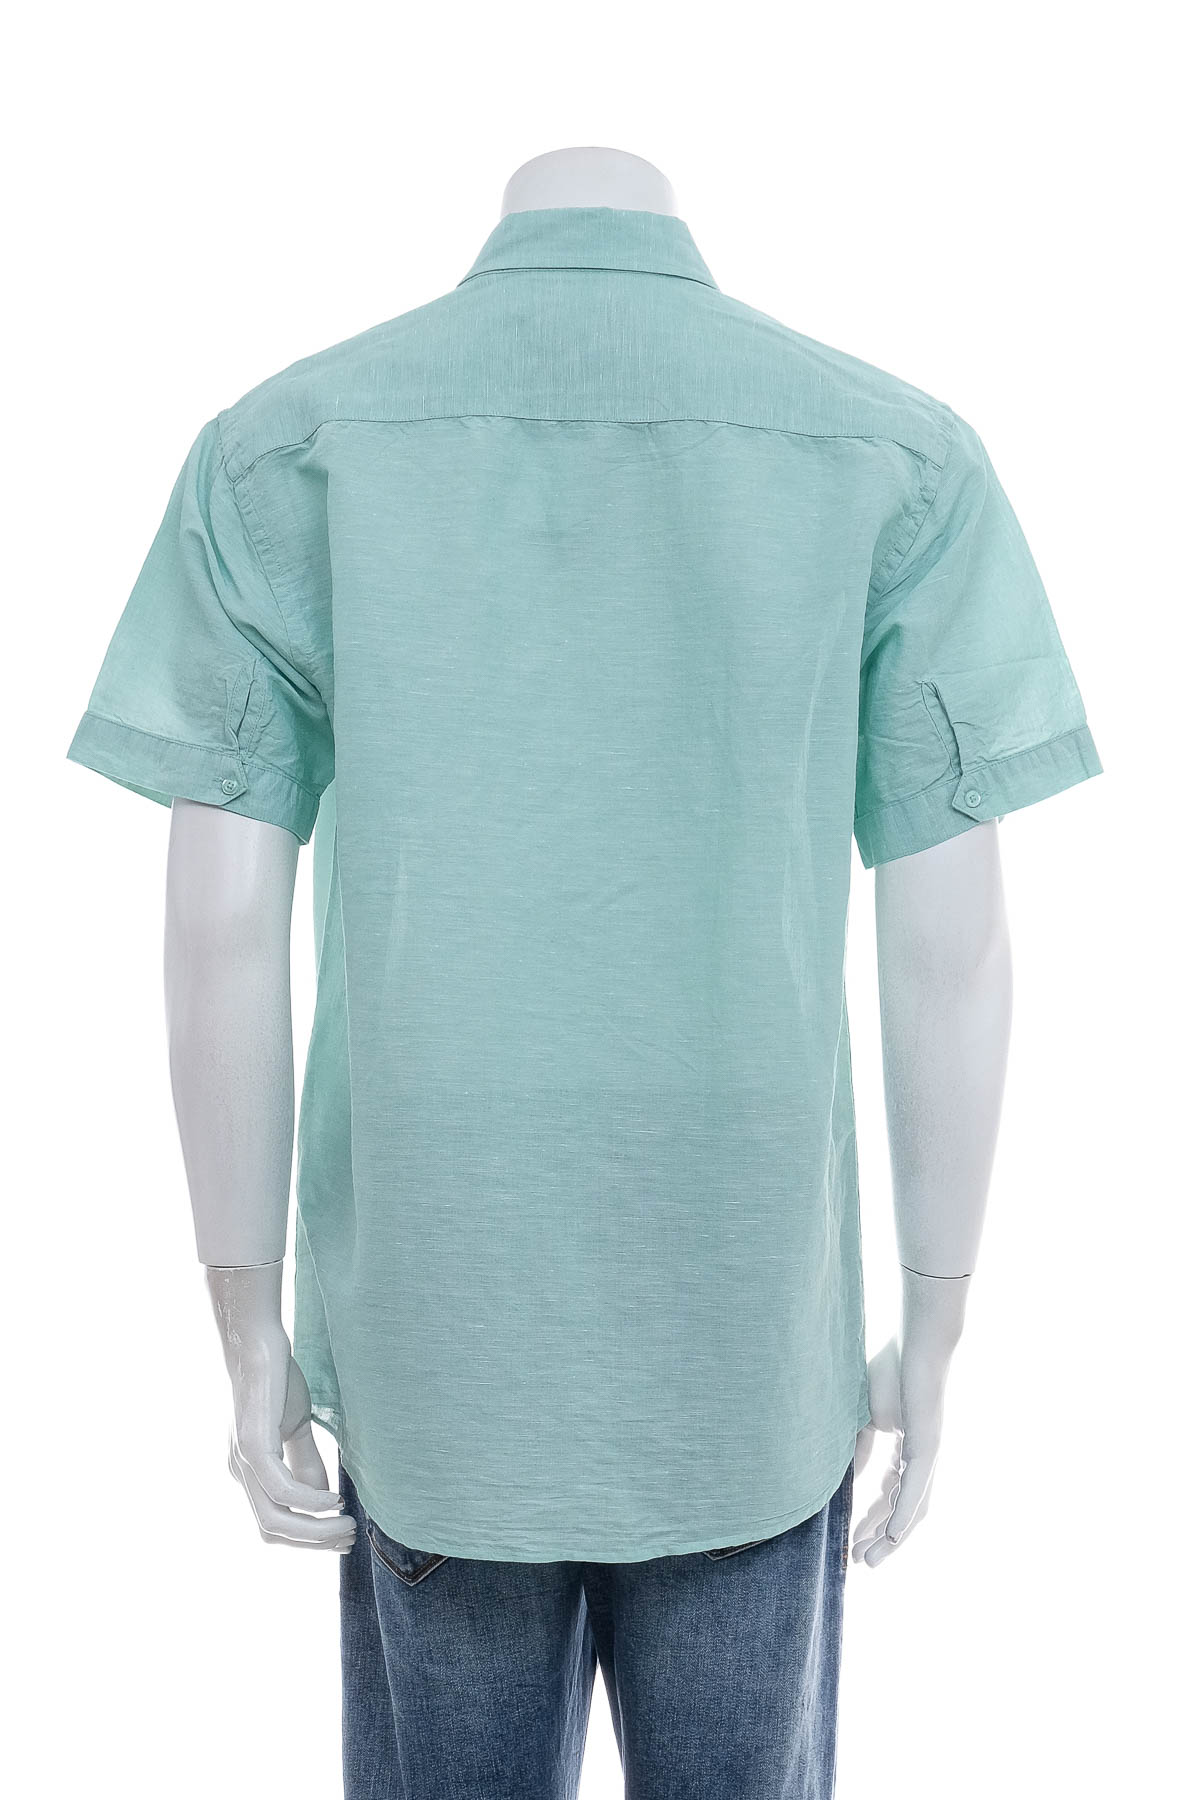 Men's shirt - FRANCO BETTONI - 1